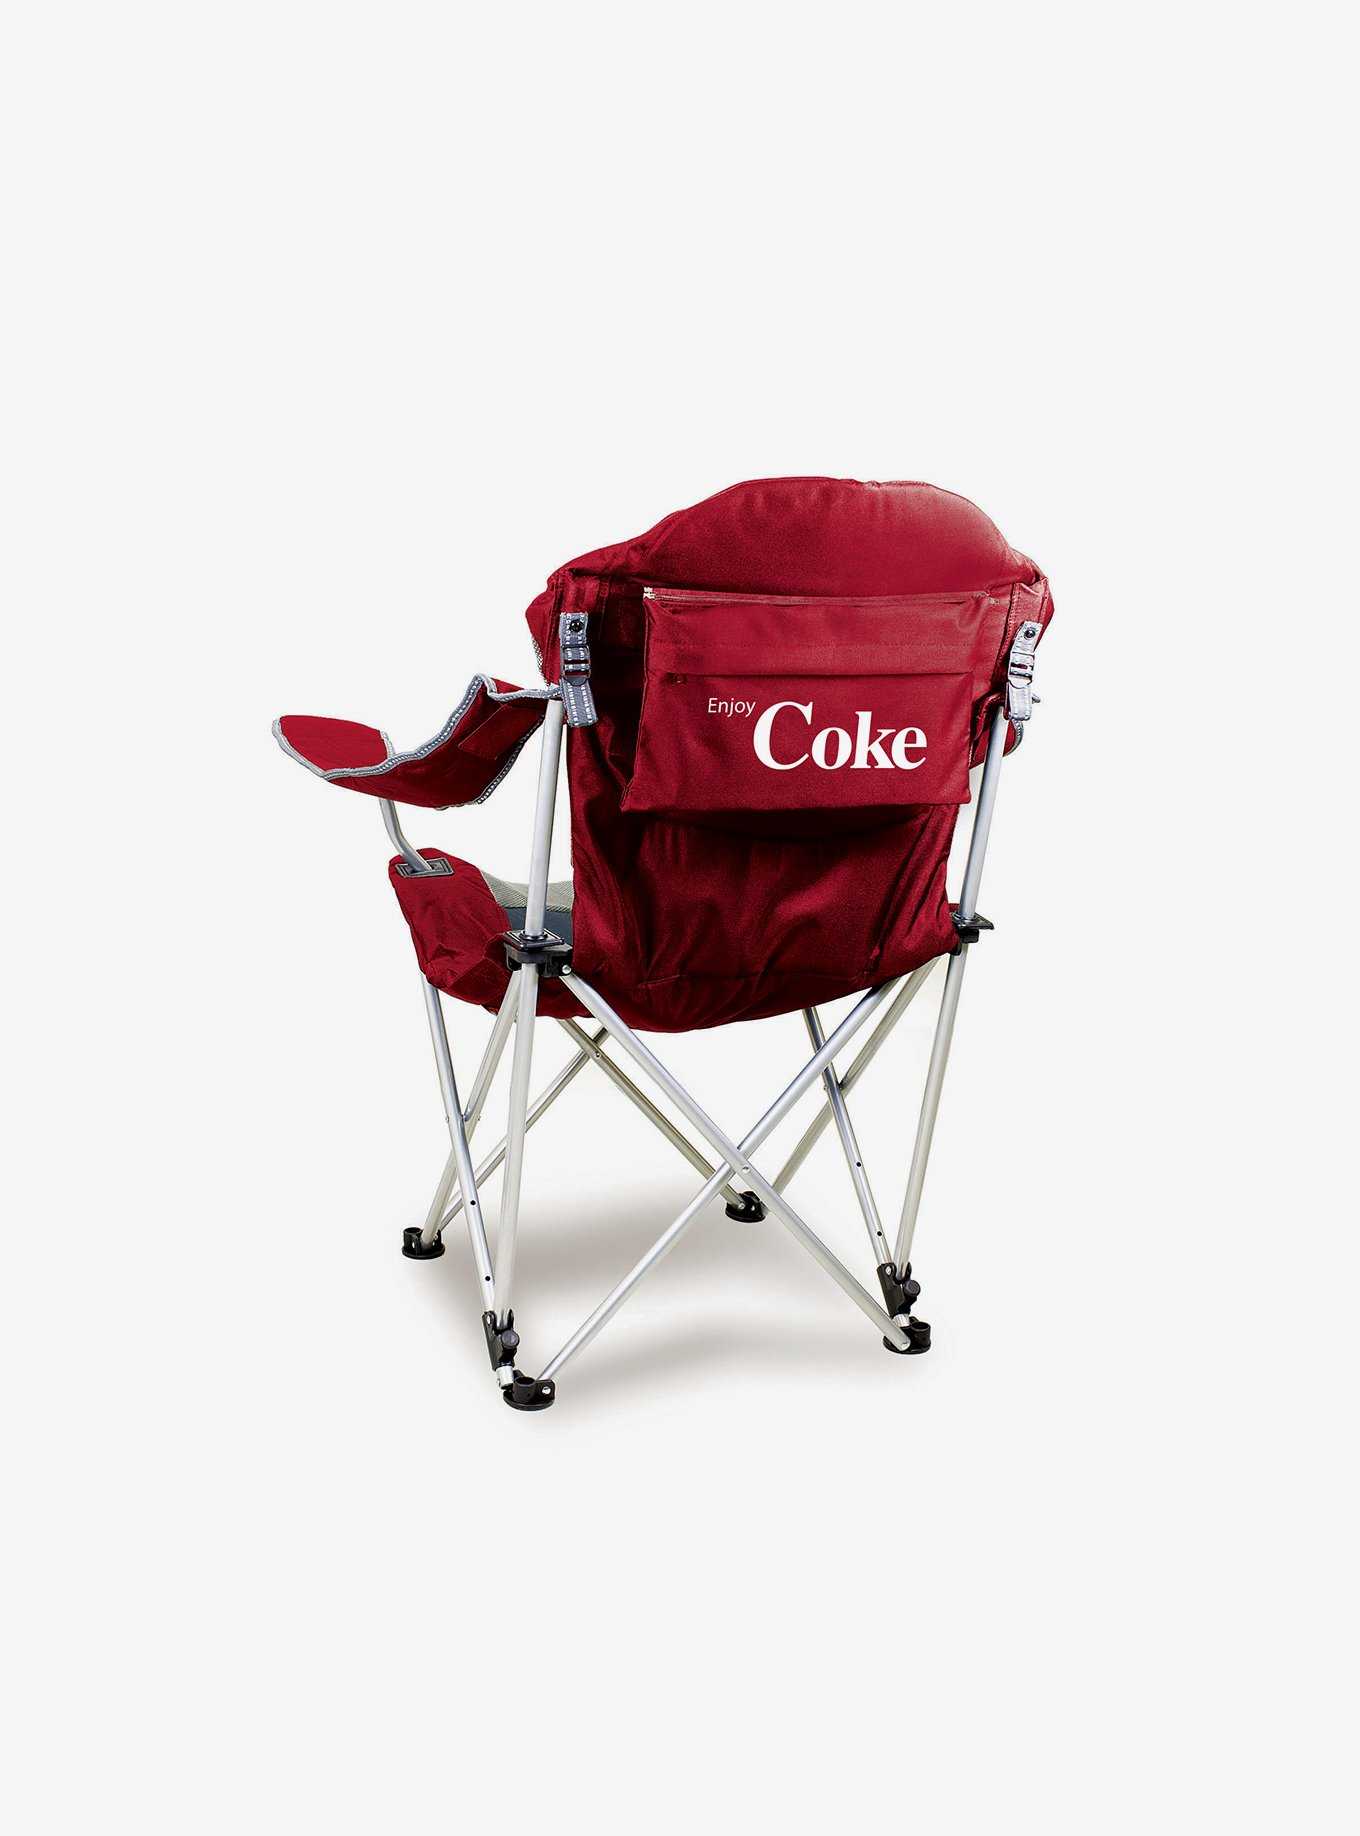 Coca-Cola Enjoy Reclining Camp Chair, , hi-res